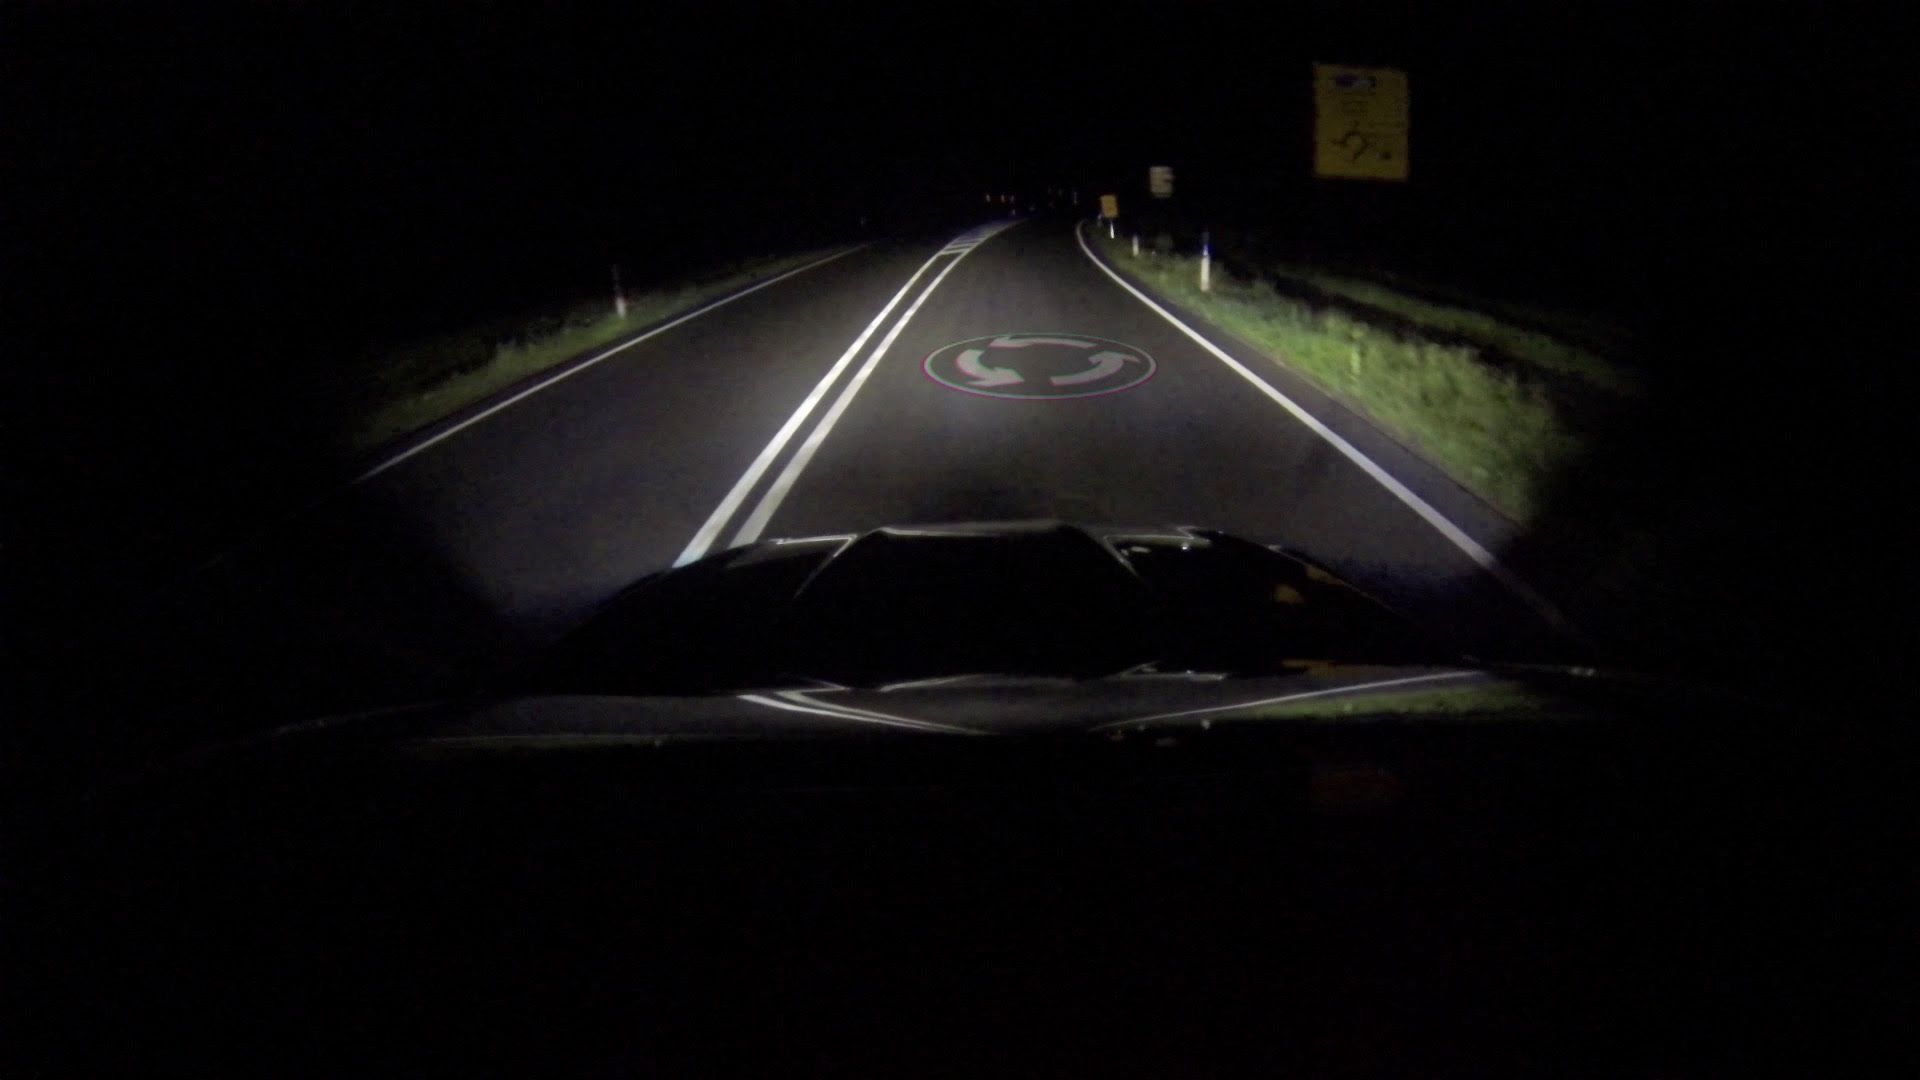 Mobilité future : vos informations pratiques projetées directement sur la route via les phares de votre véhicule ?